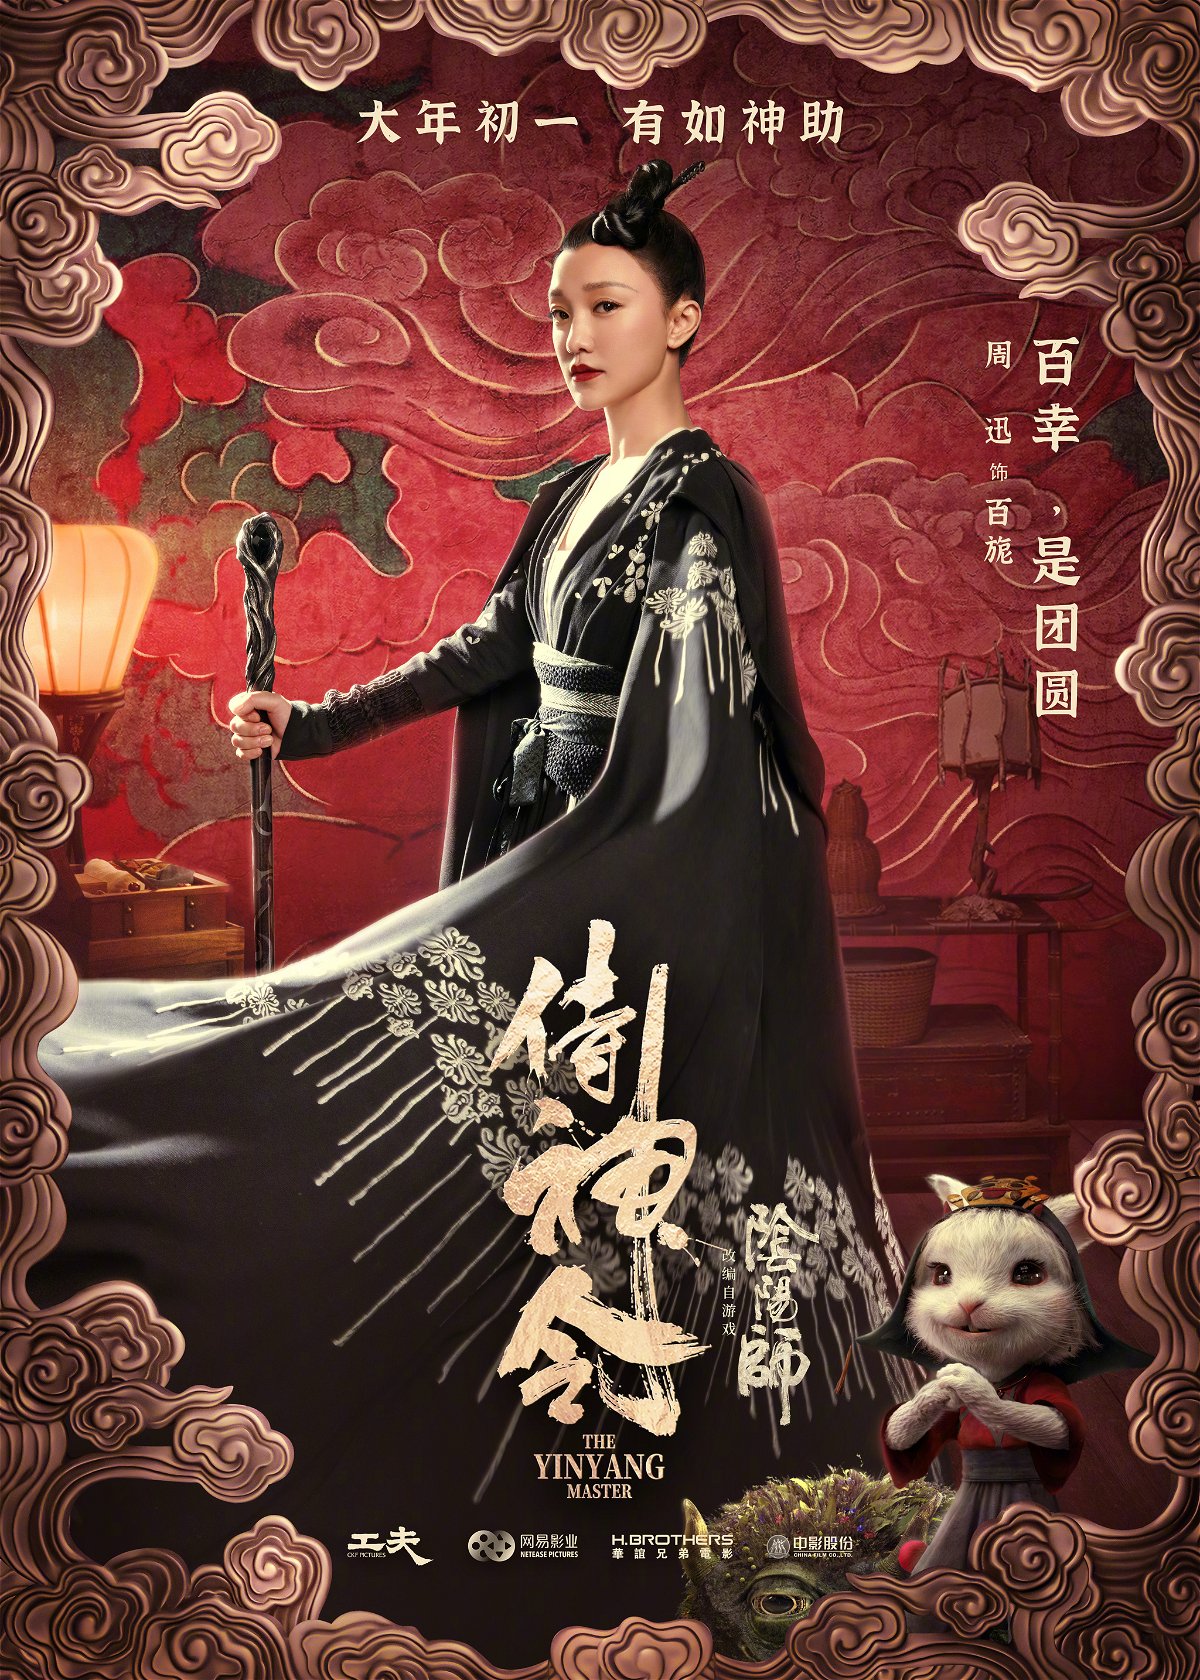 Zhou Xun nel poster del film The Yin Yang Master